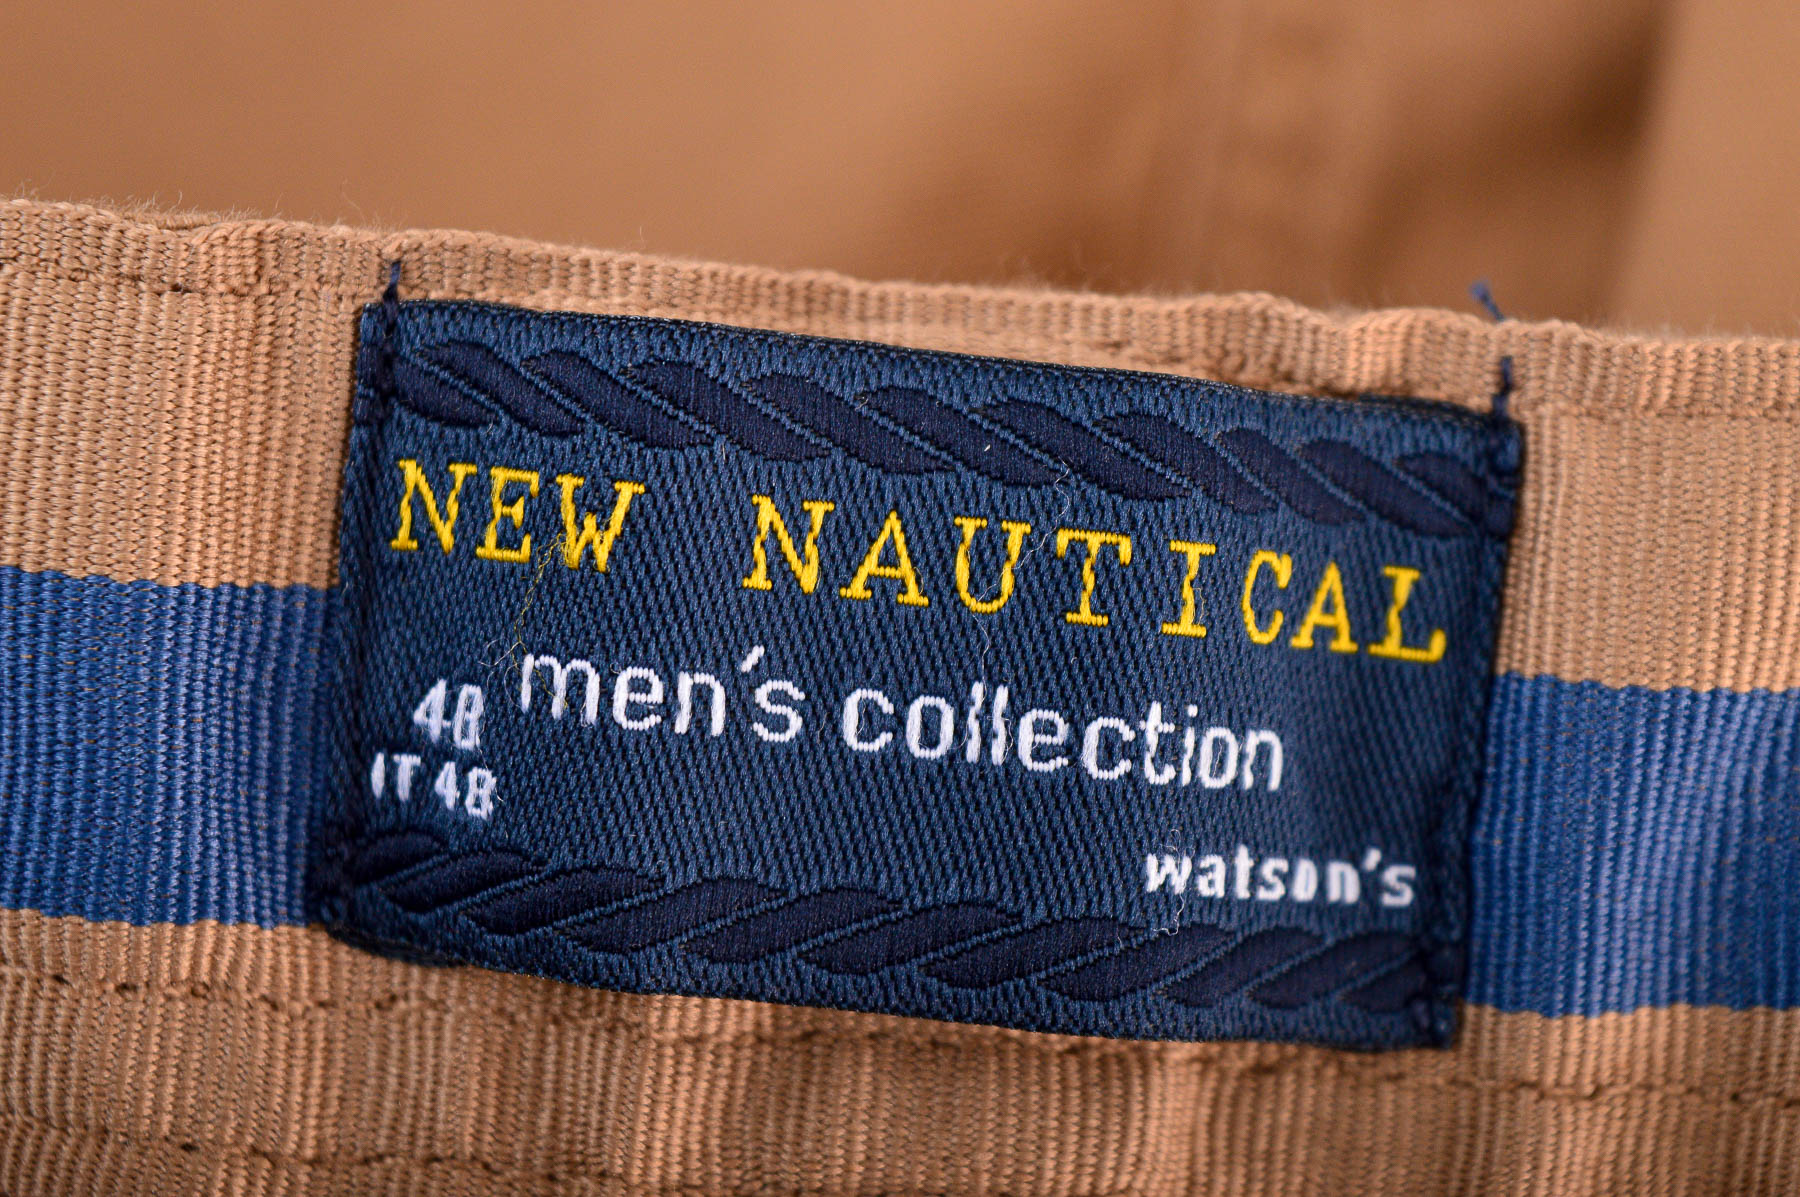 Men's trousers - Watson's - 2